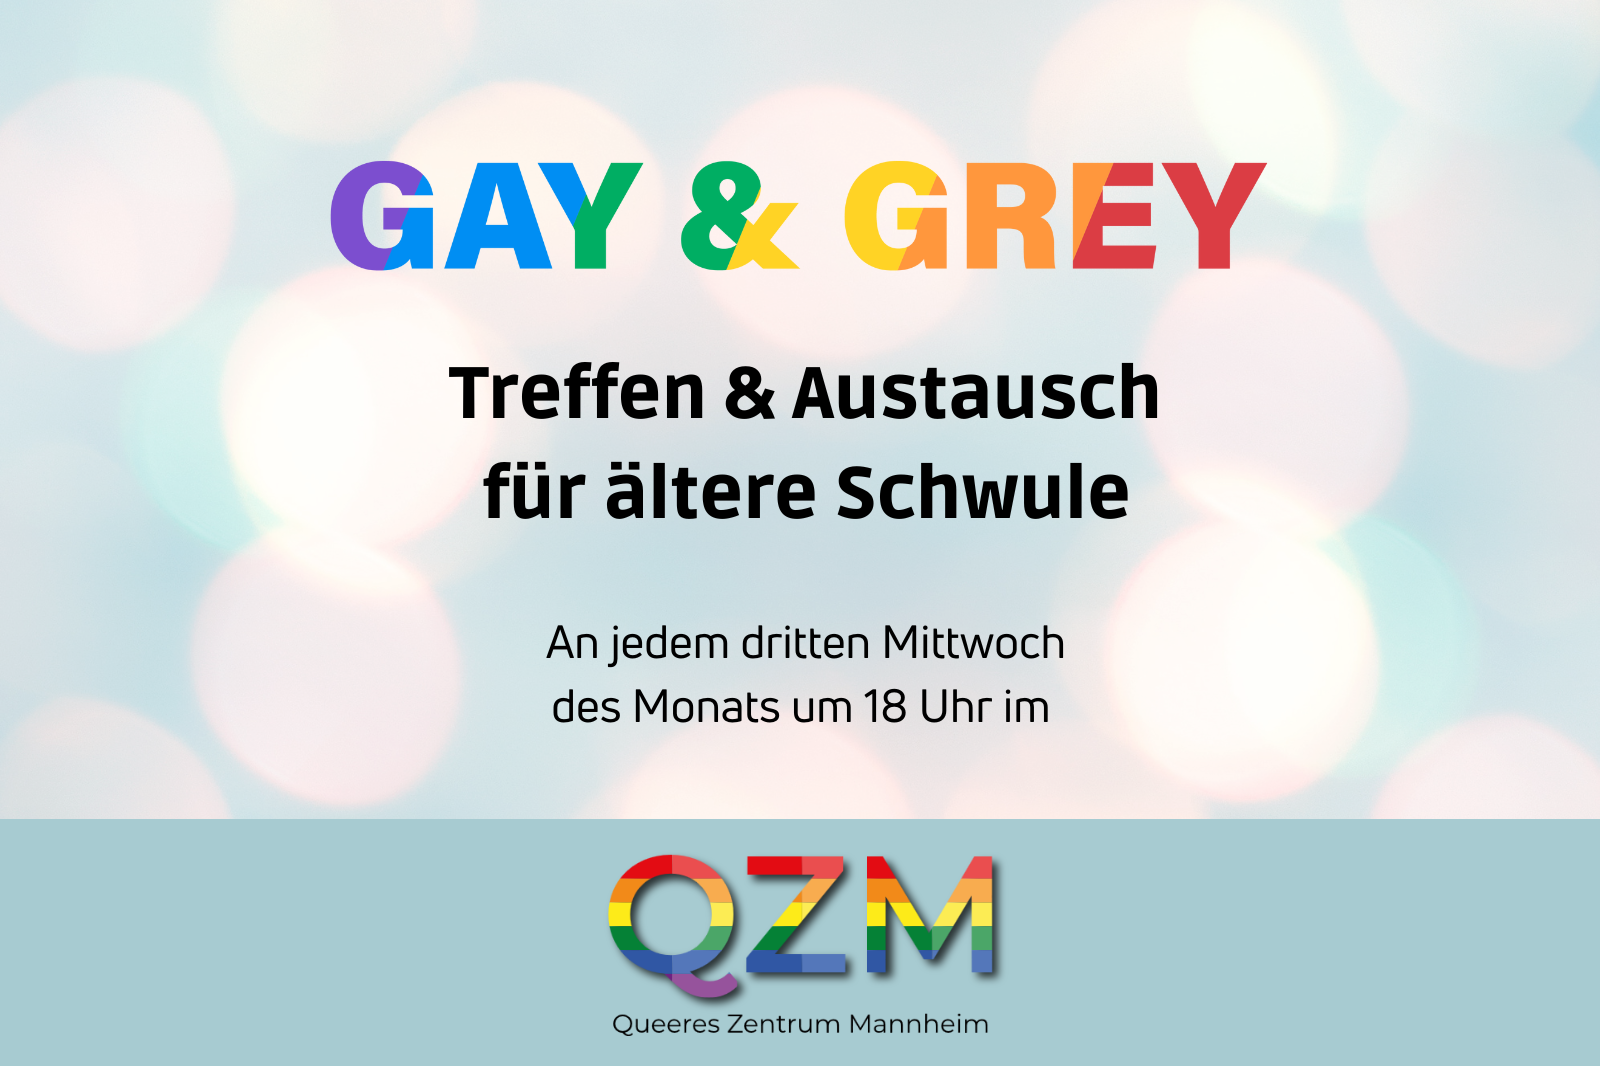 Gay and Grey. Treffen und Austausch für ältere Schwule. An jedem dritten Mittwoch um 18 Uhr im QZM.